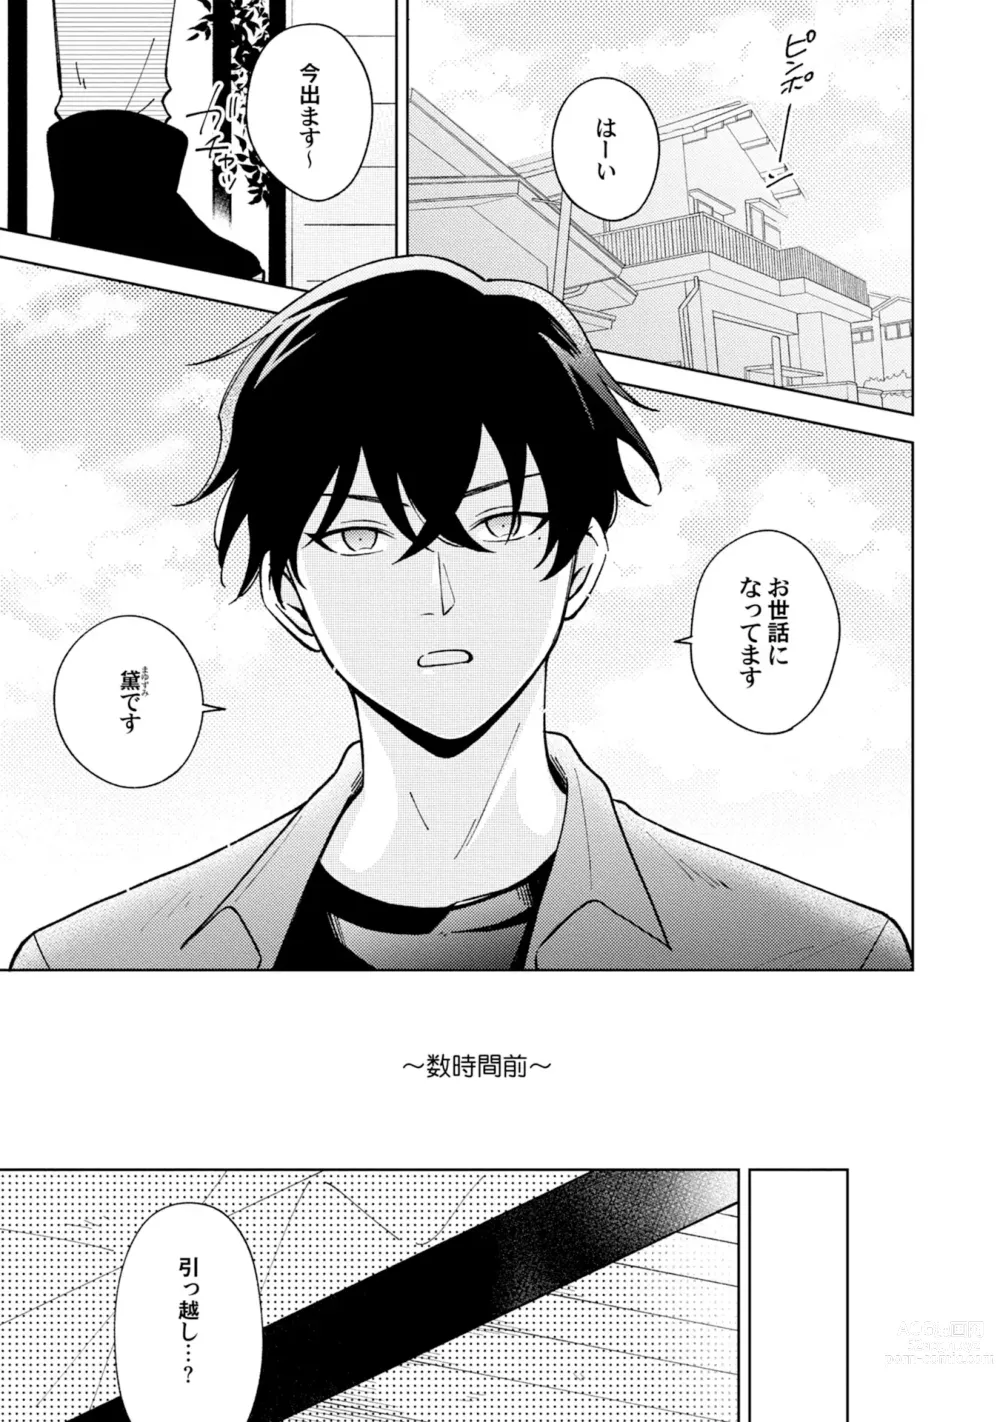 Page 3 of manga Toho 3-byou no Trouble Love Room 5